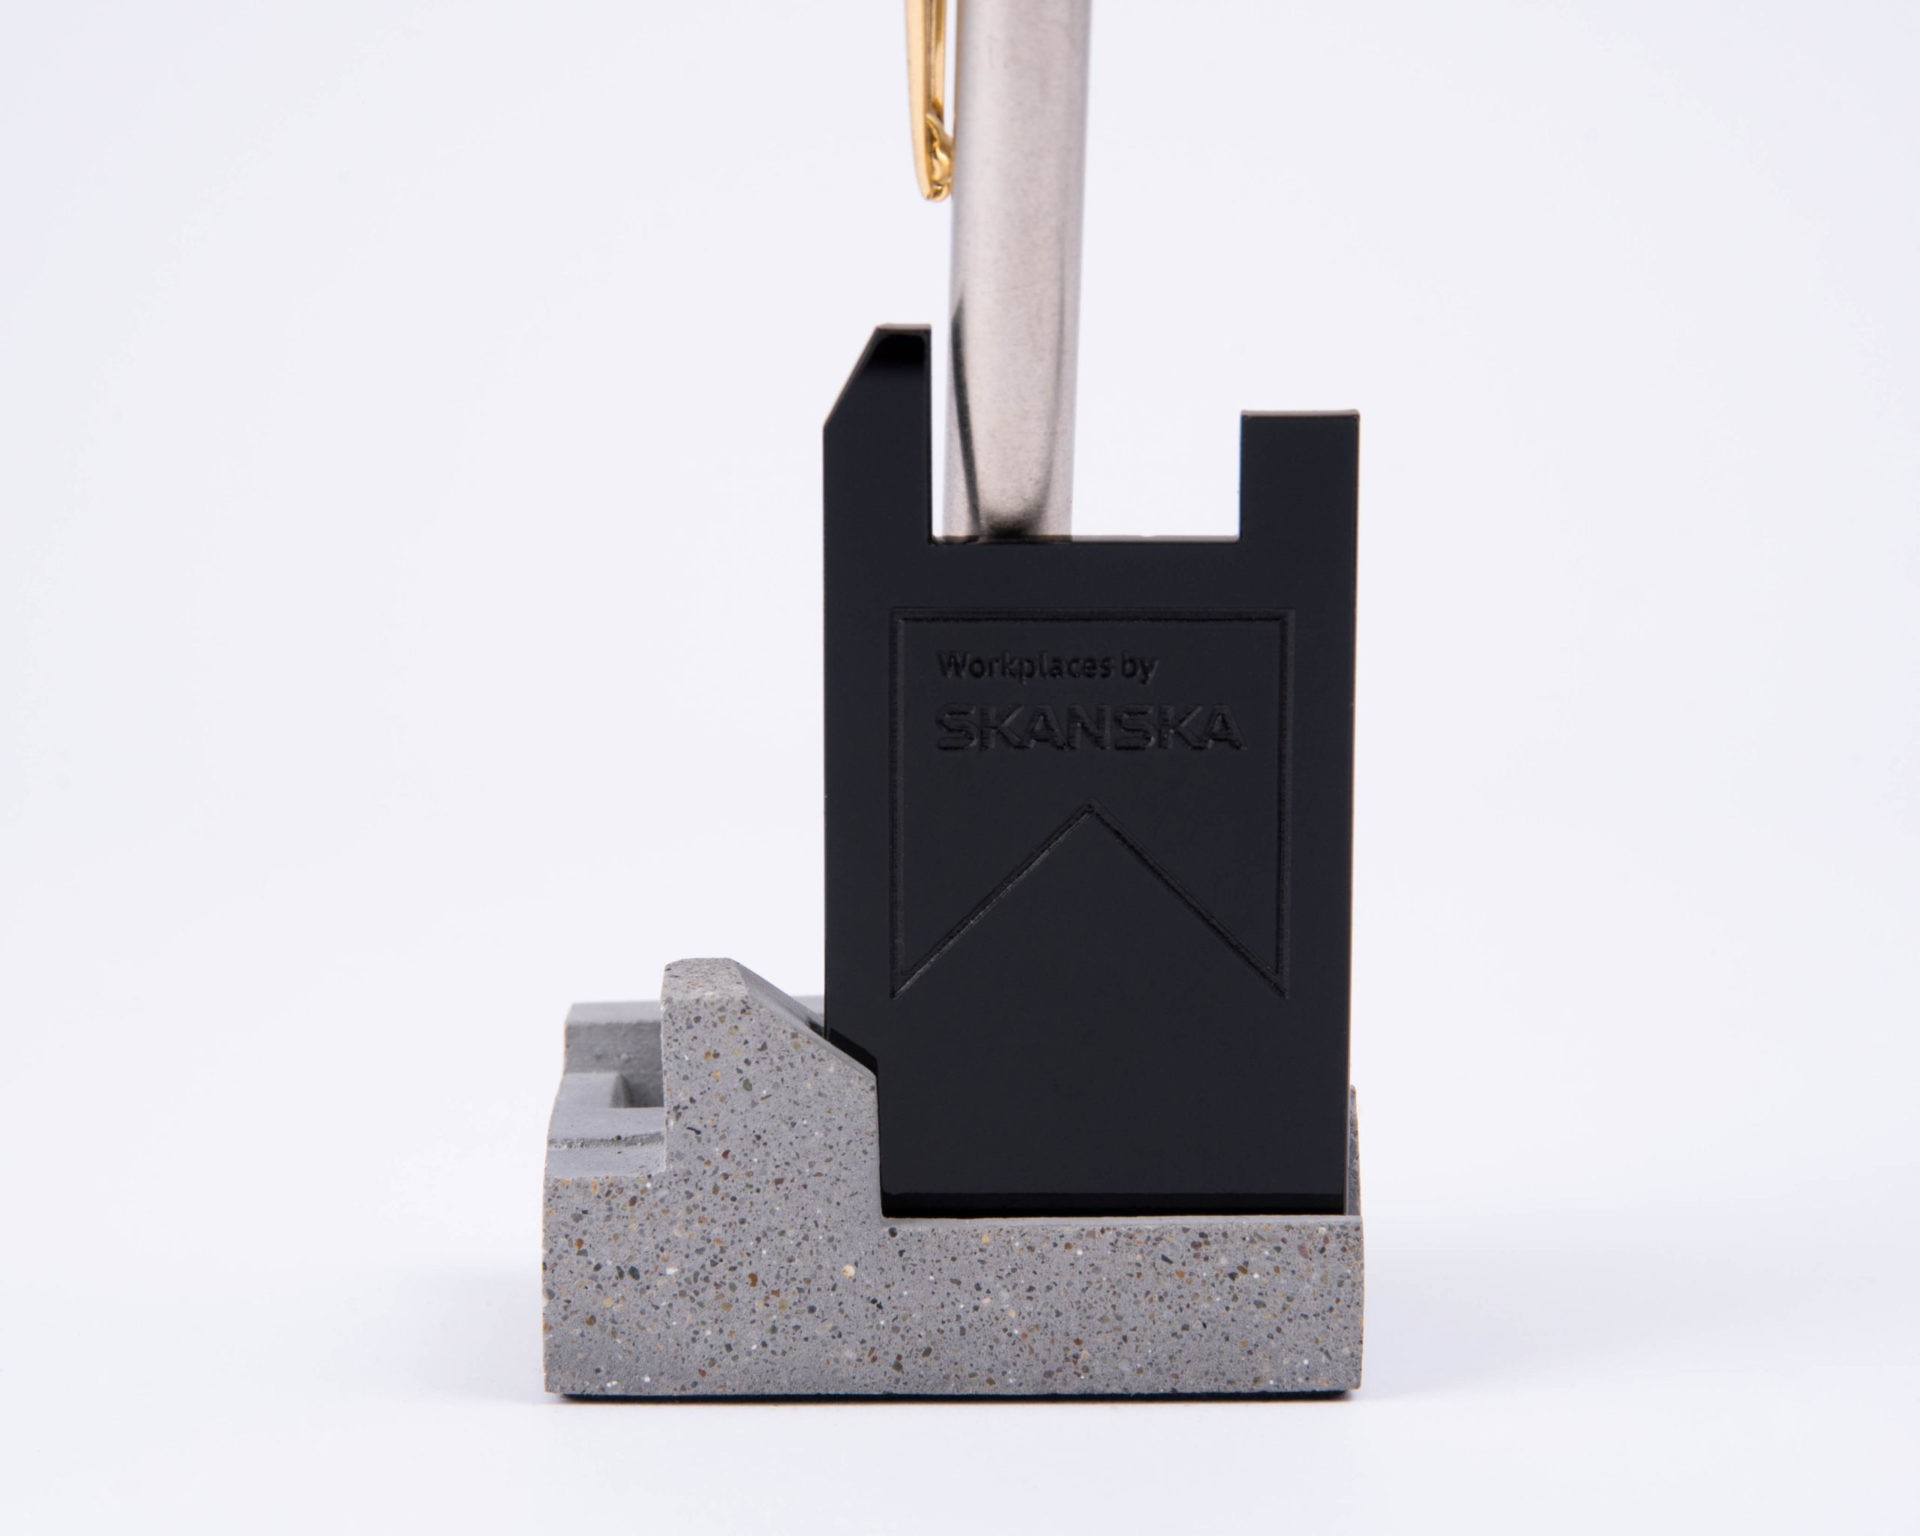 Branded concrete and acrylic pen holder for Skanska